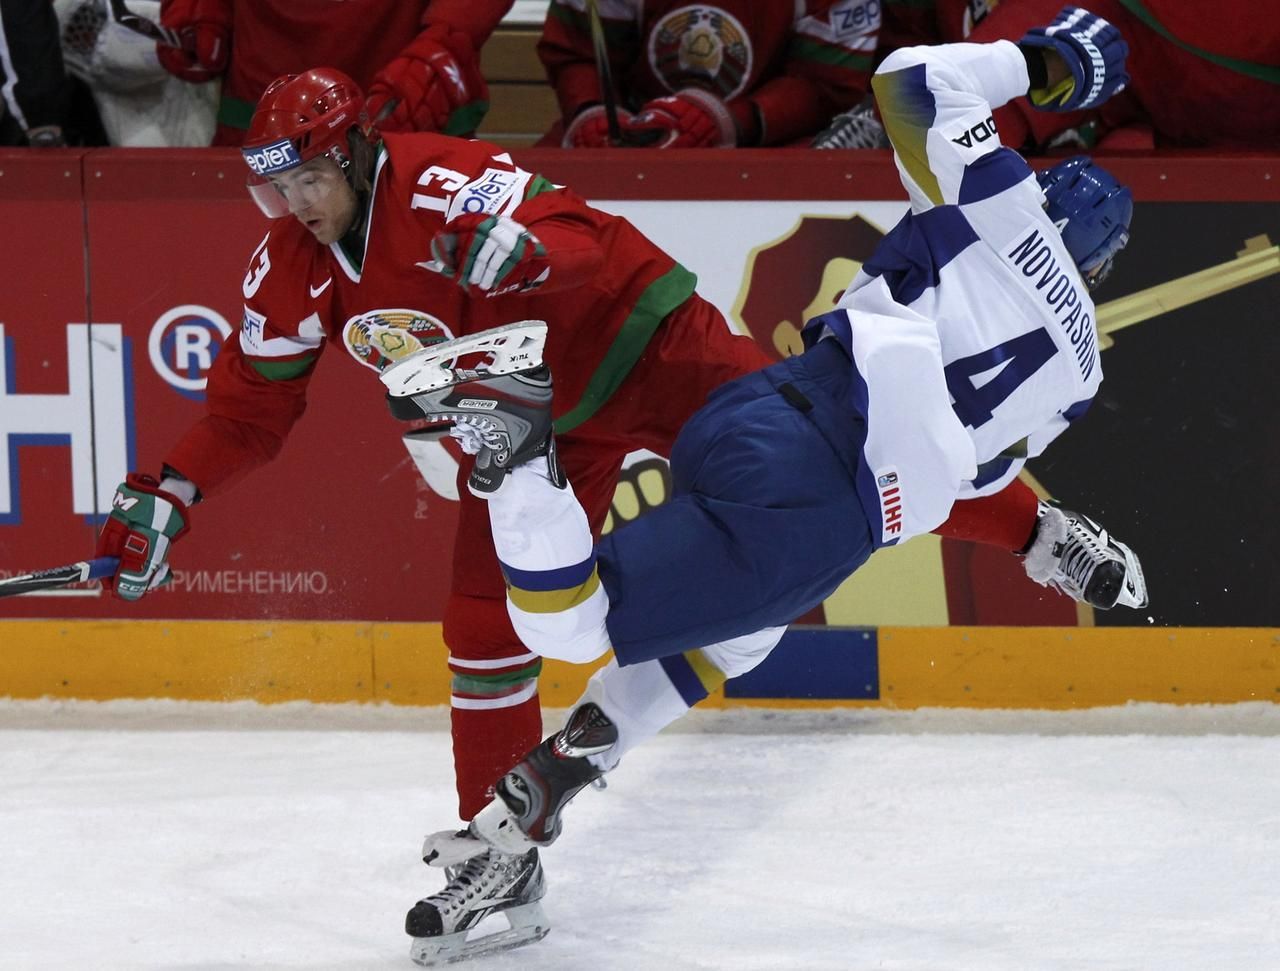 MS v hokeji 2012: Kazachstán - Bělorusko (Novopašin, Drozd)